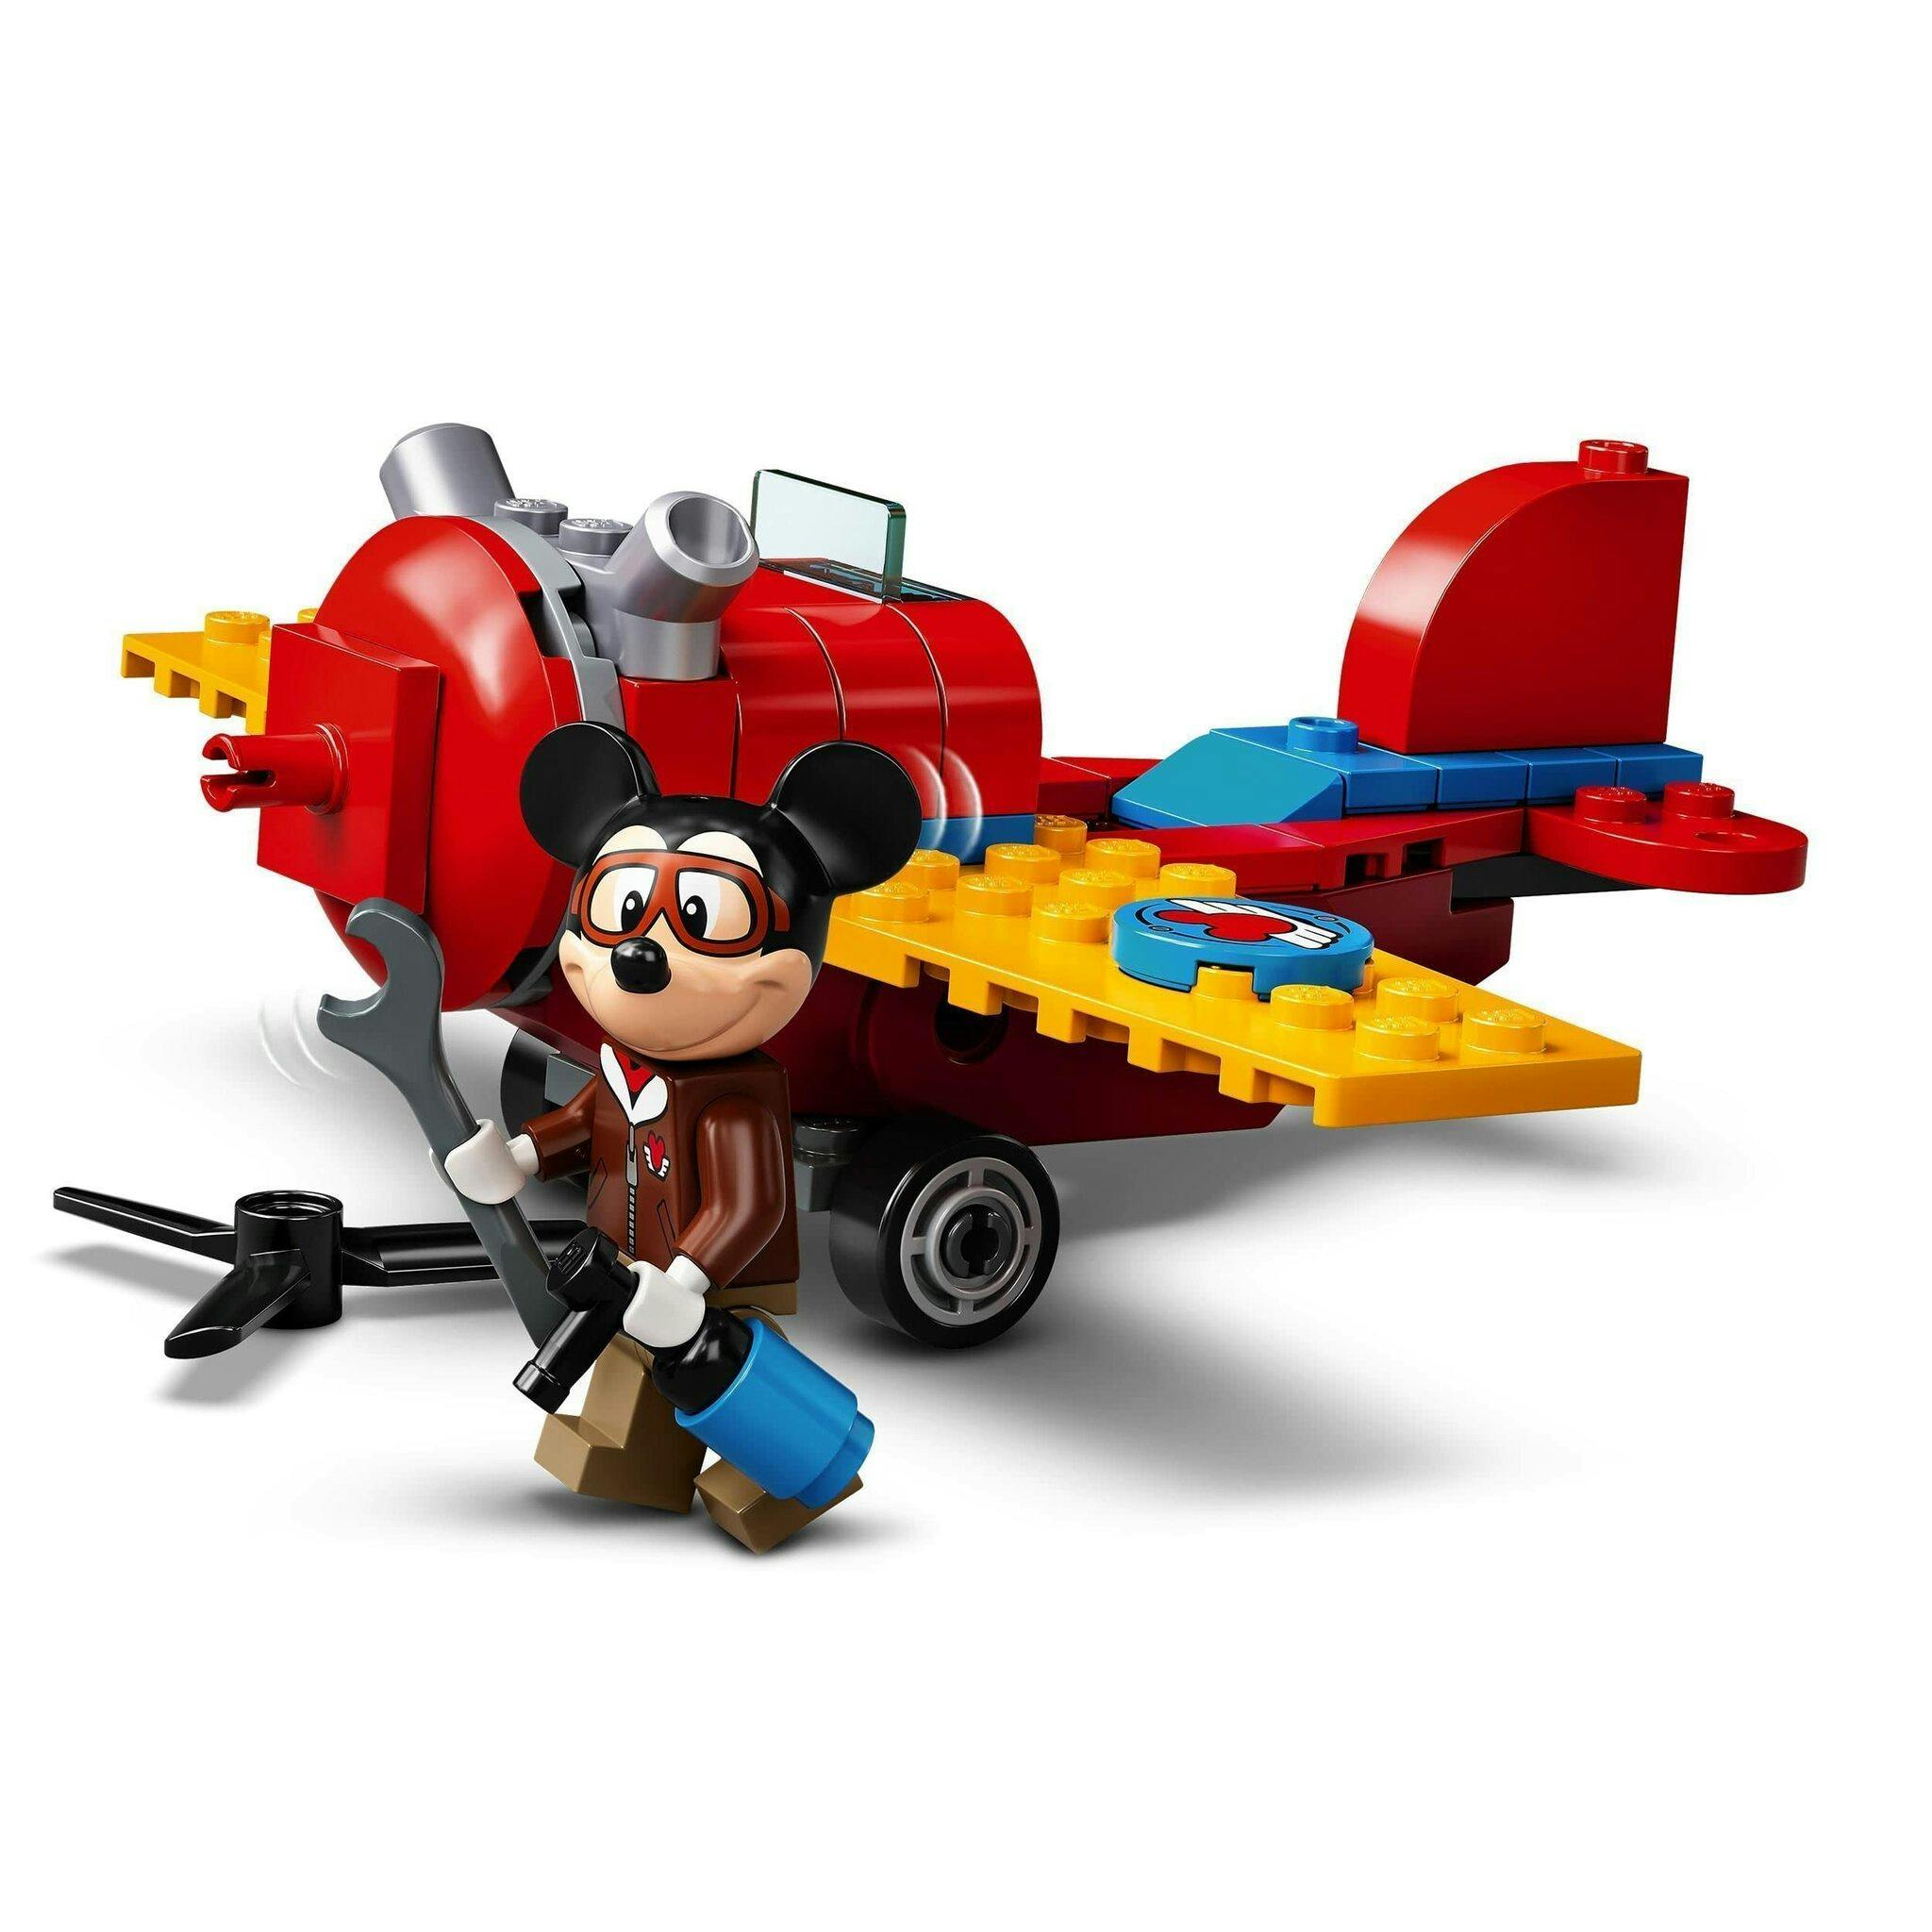 LEGO Creator Sportbil, 31100